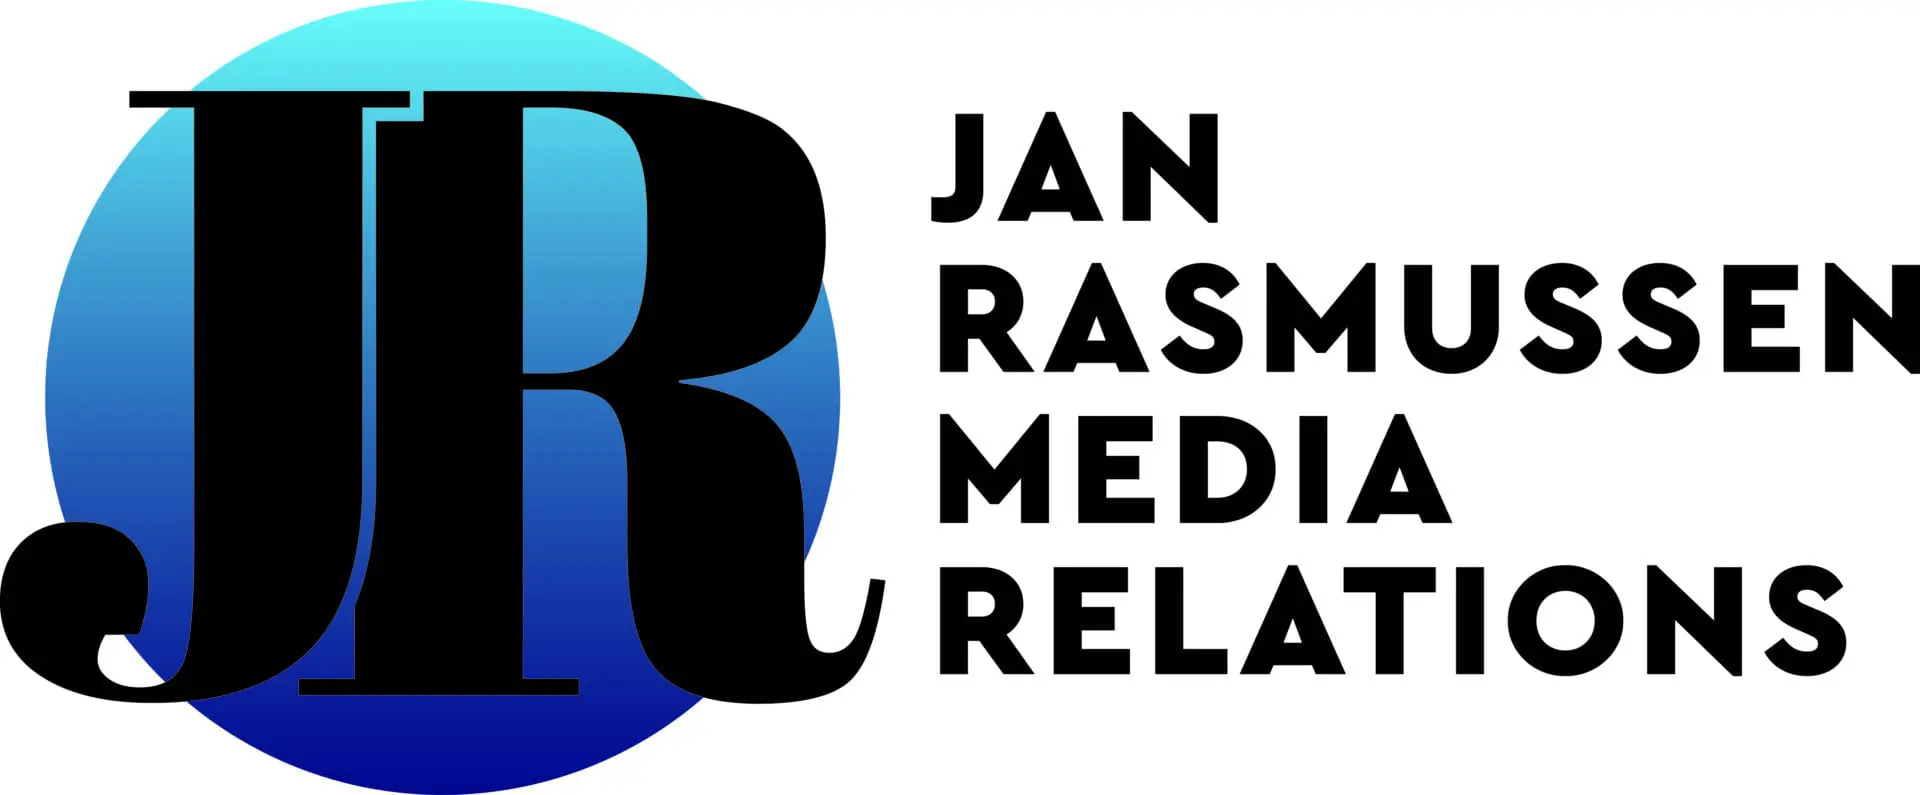 CX-79796_Jan Rasmussen Media Relations_FINAL